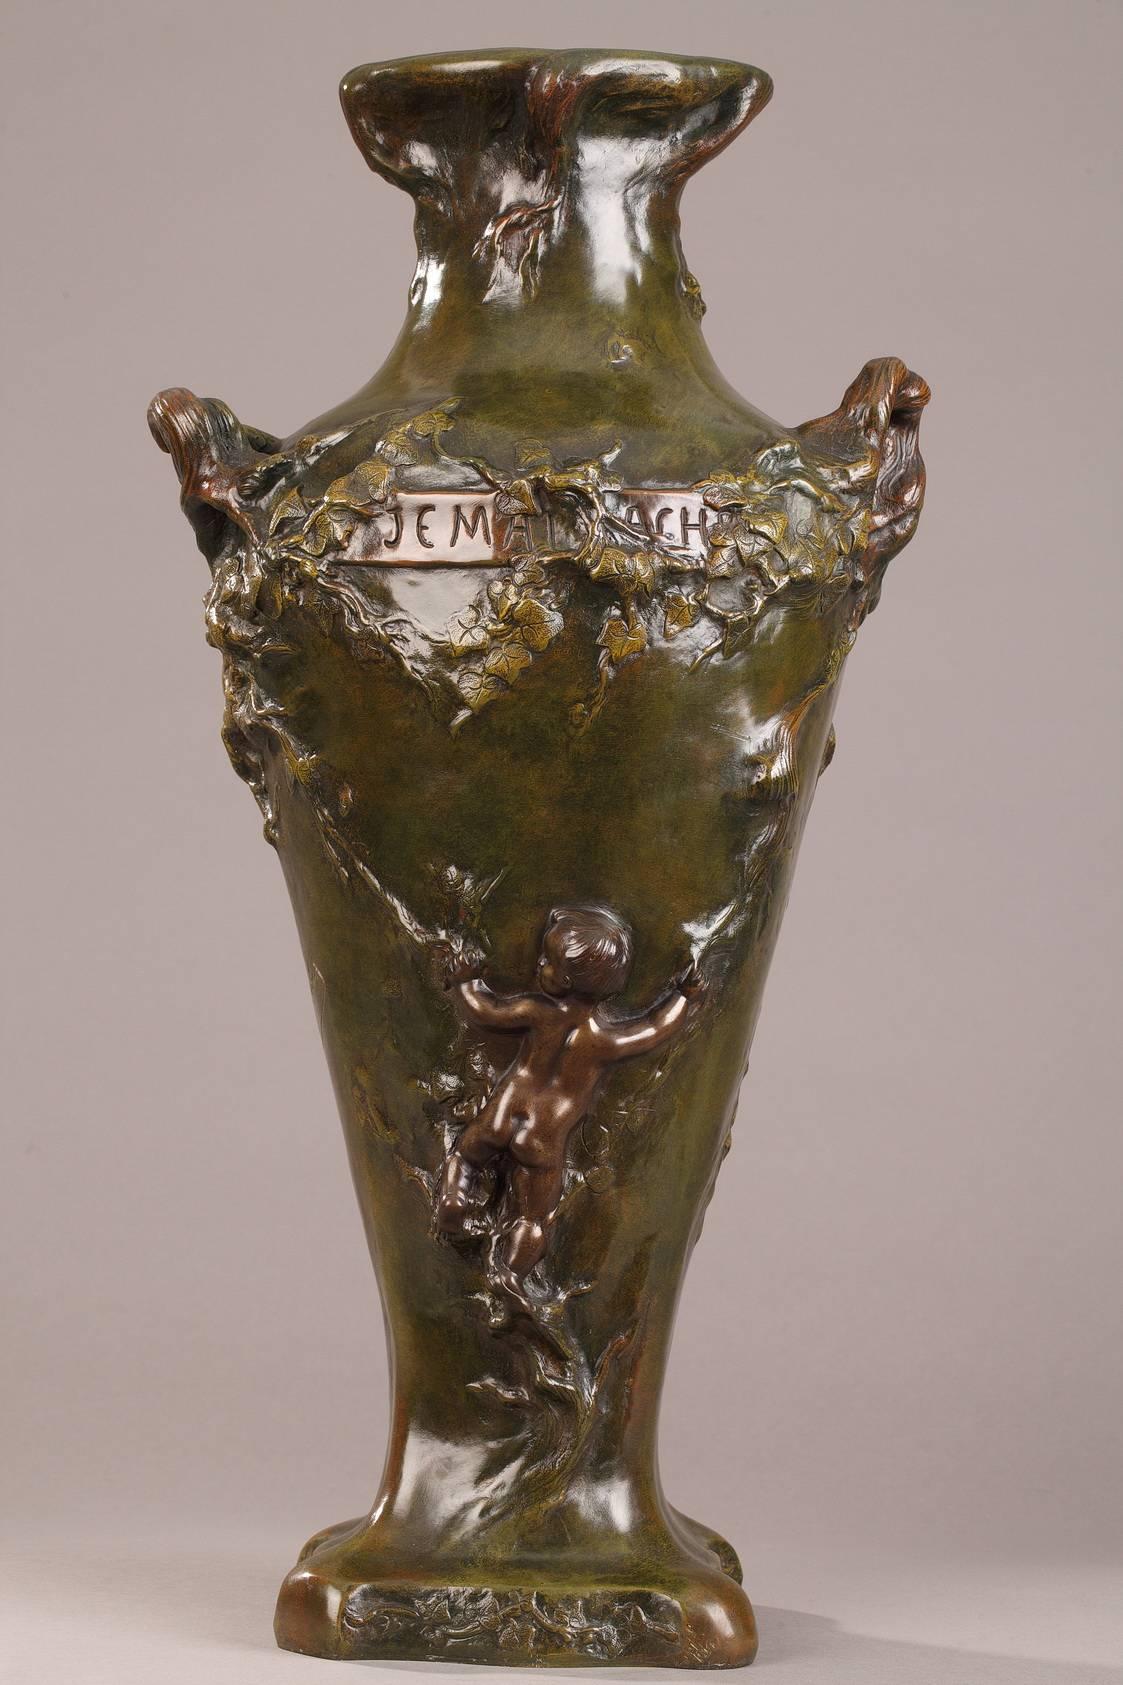 Große bronzene Amphorenvase mit grüner, brauner und gelber Patinierung. Die Vorderseite des Bauches ist mit einer Najade verziert, die auf Wellen liegt und von Wasserpflanzen umgeben ist. Auf der anderen Seite der Vase klettert ein Amor, von hinten